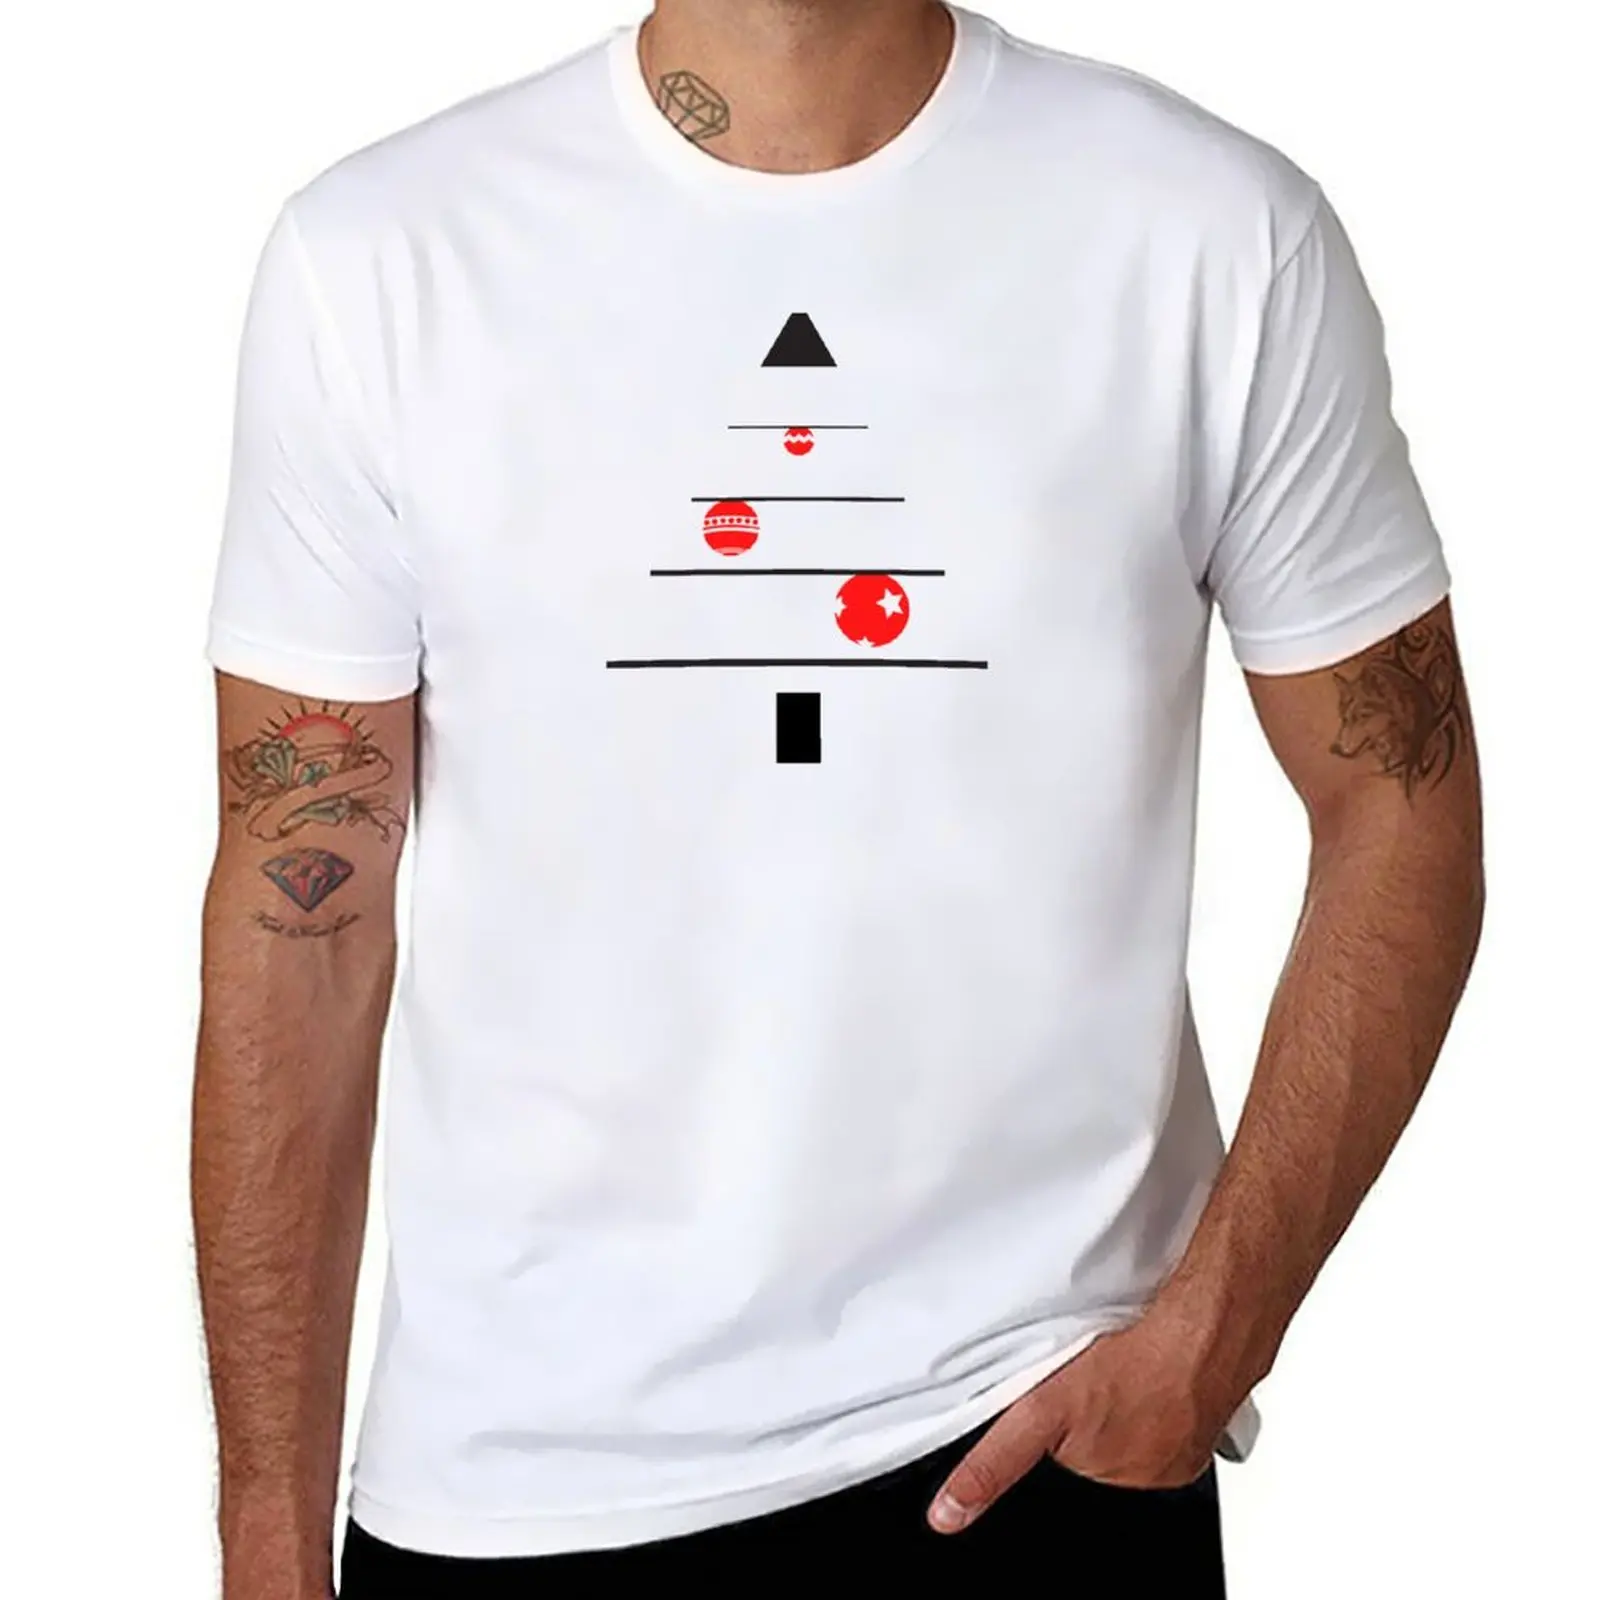 Минималистичная футболка с рождественской елкой, обычная футболка, футболки для тяжеловесов, черные футболки, комплект мужских футболок